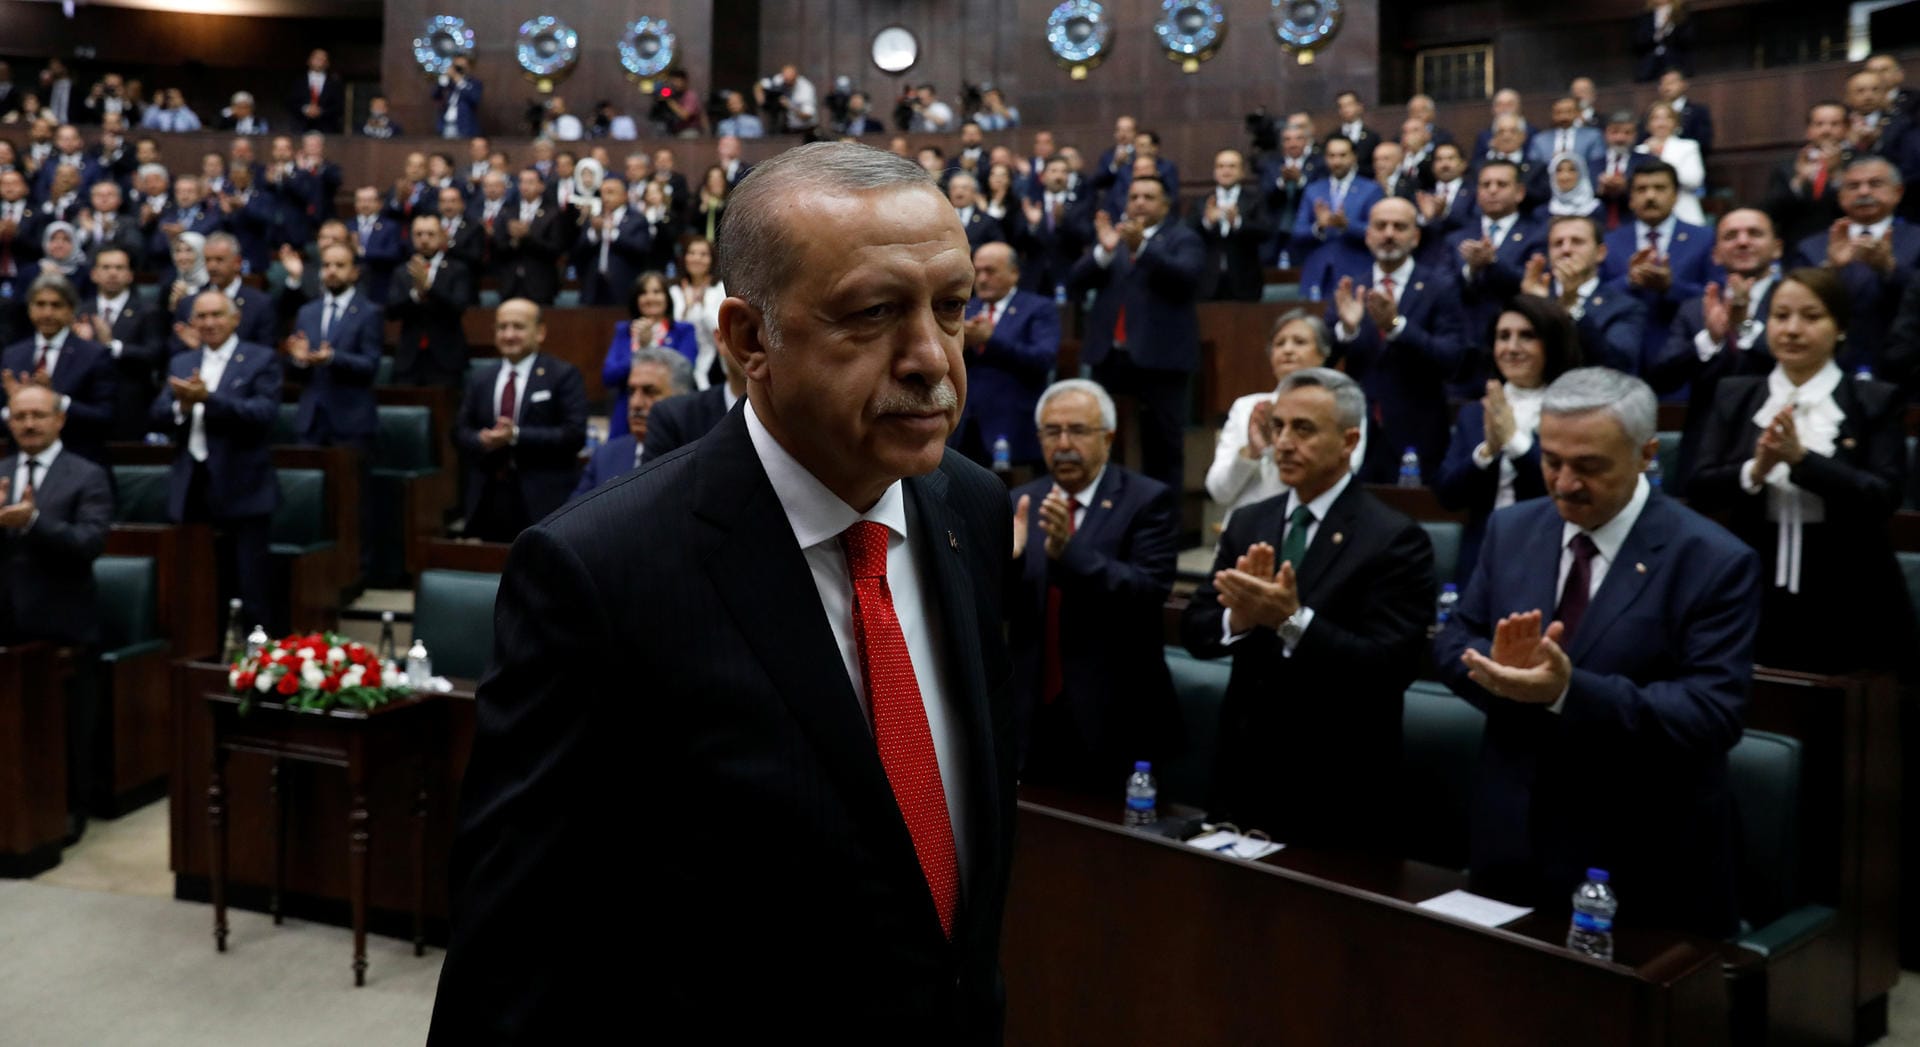 Während des Ausnahmezustands konnte Erdogan per Dekret regieren. Kurz bevor dieser aufgehoben wurde, entließ er 18.632 Staatsbedienstete. Insgesamt verloren in den zwei Jahren 112.697 Bedienstete ihre Stelle. Neben Soldaten wurden auch Ministerialbeamte, Lehrer und Professoren entlassen.